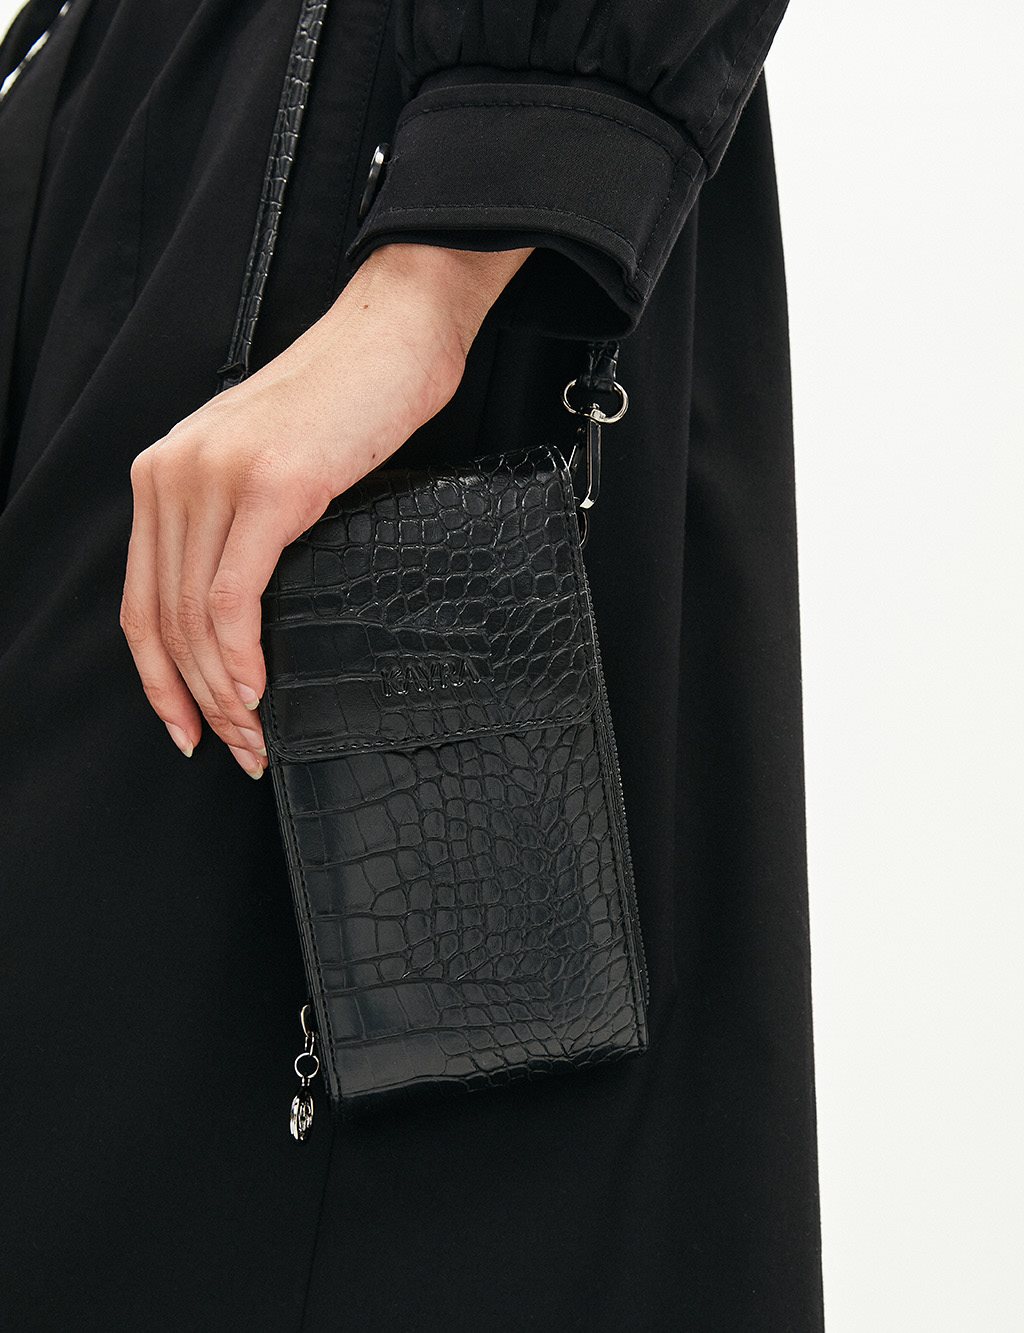 Croco Patterned Multifunctional Bag Wallet Black